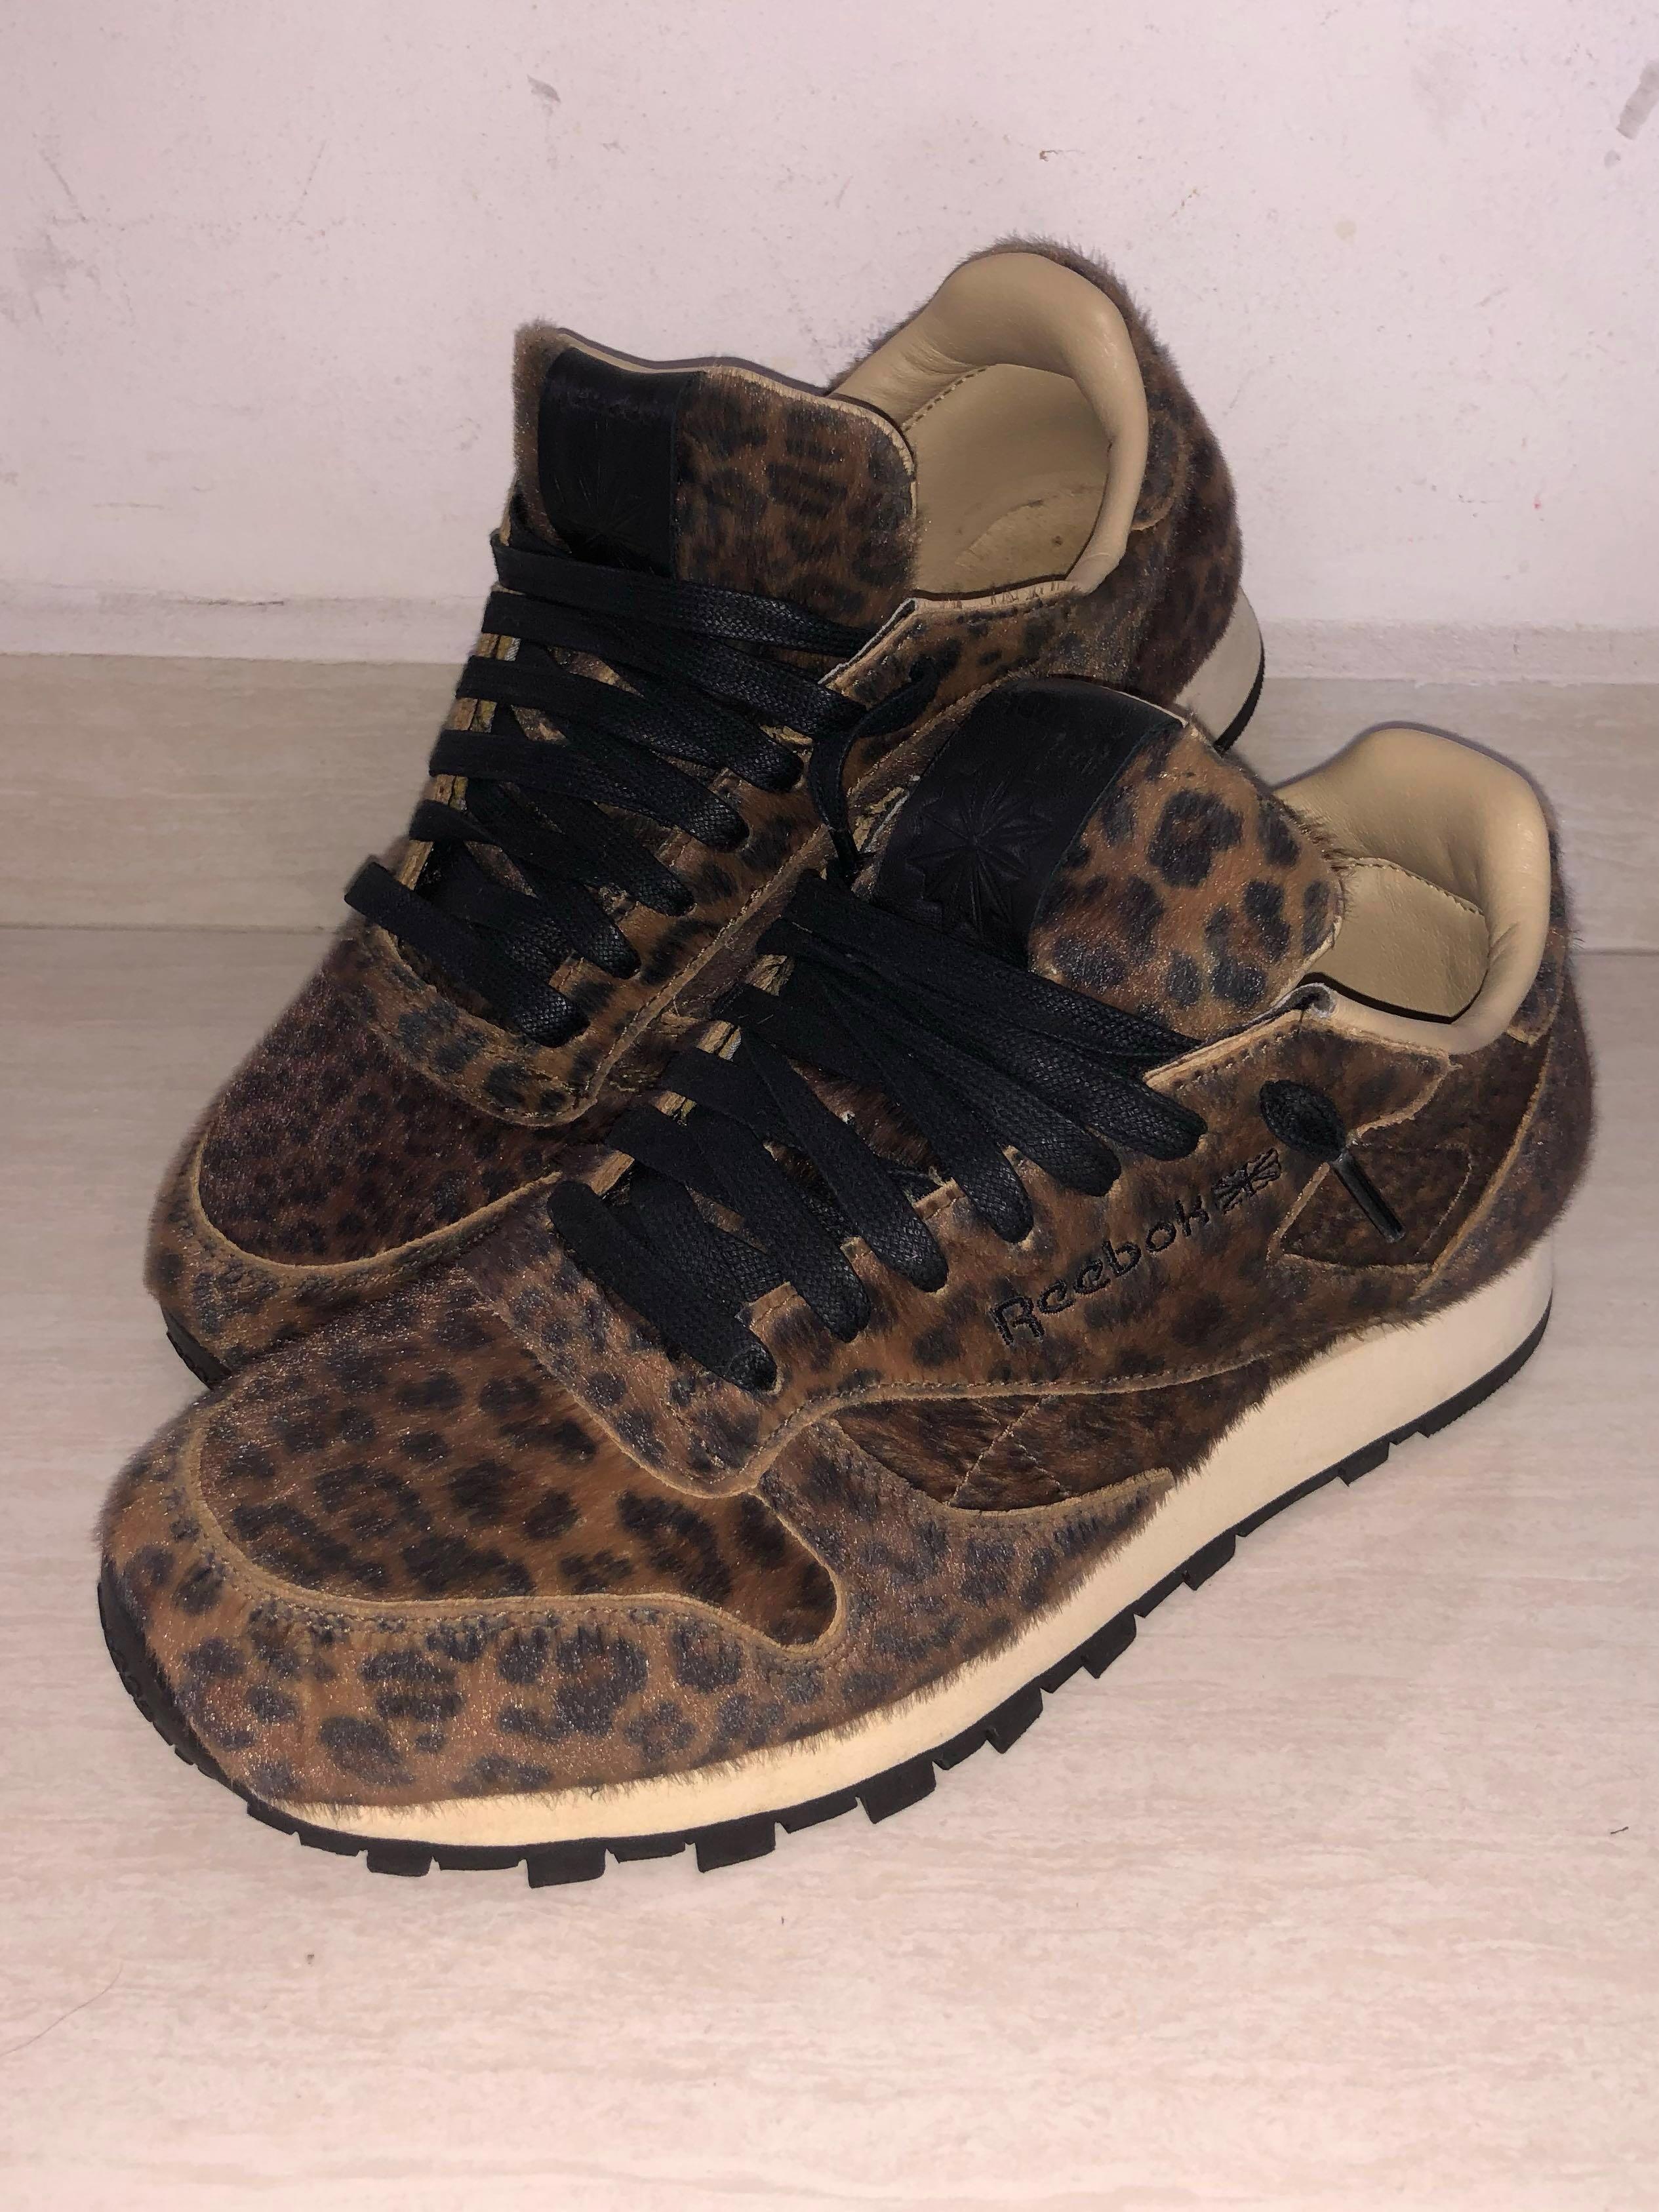 reebok leopard print trainers